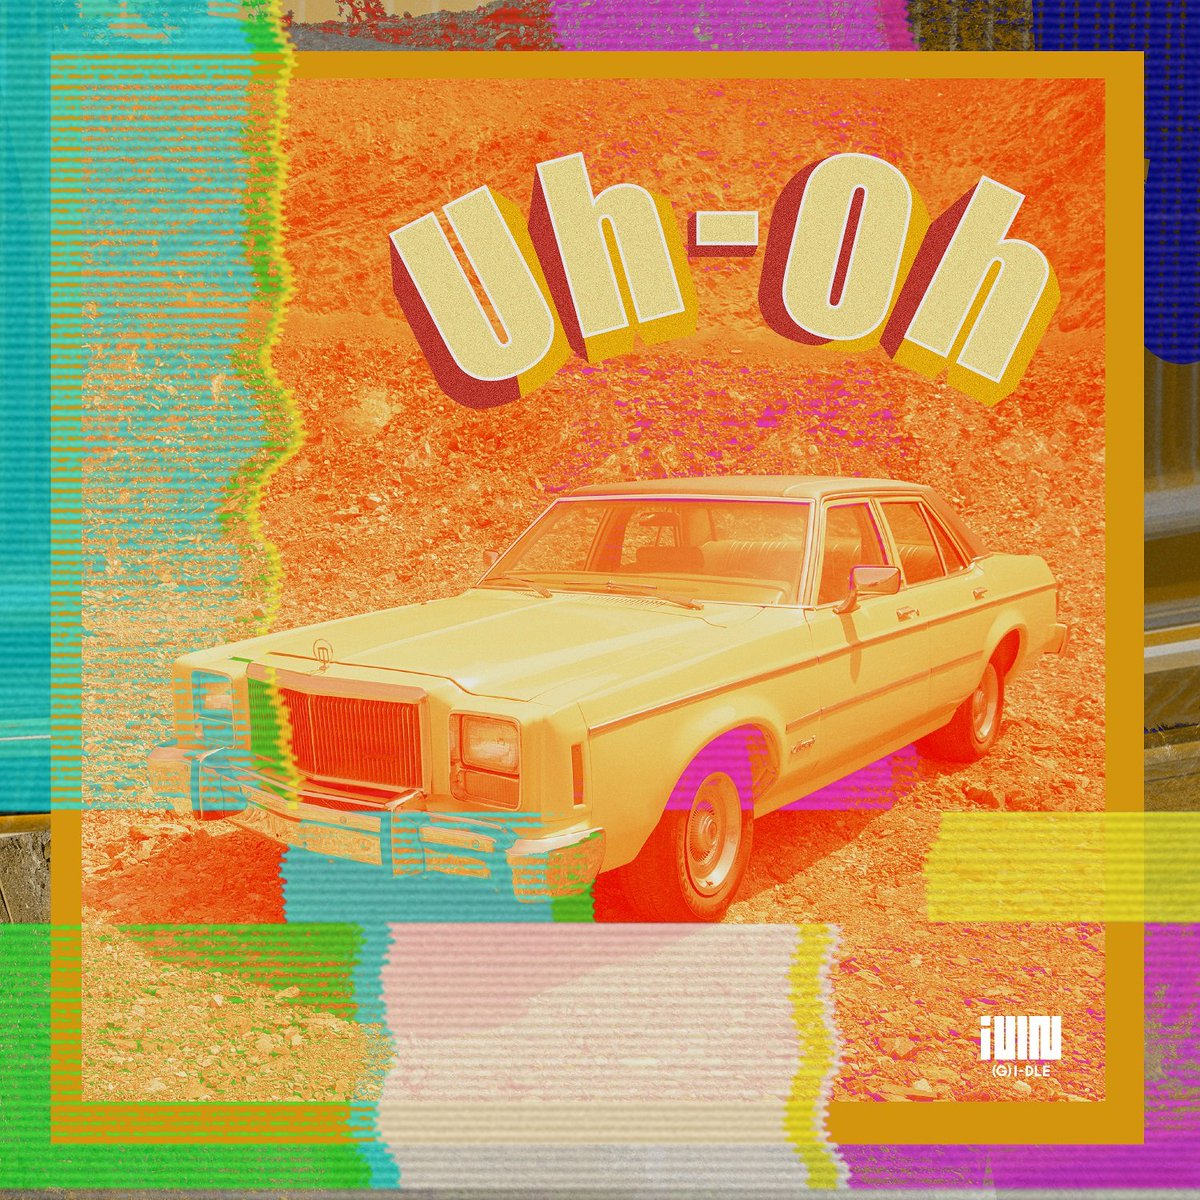 (G)I-DLE's Uh-Oh album cover art